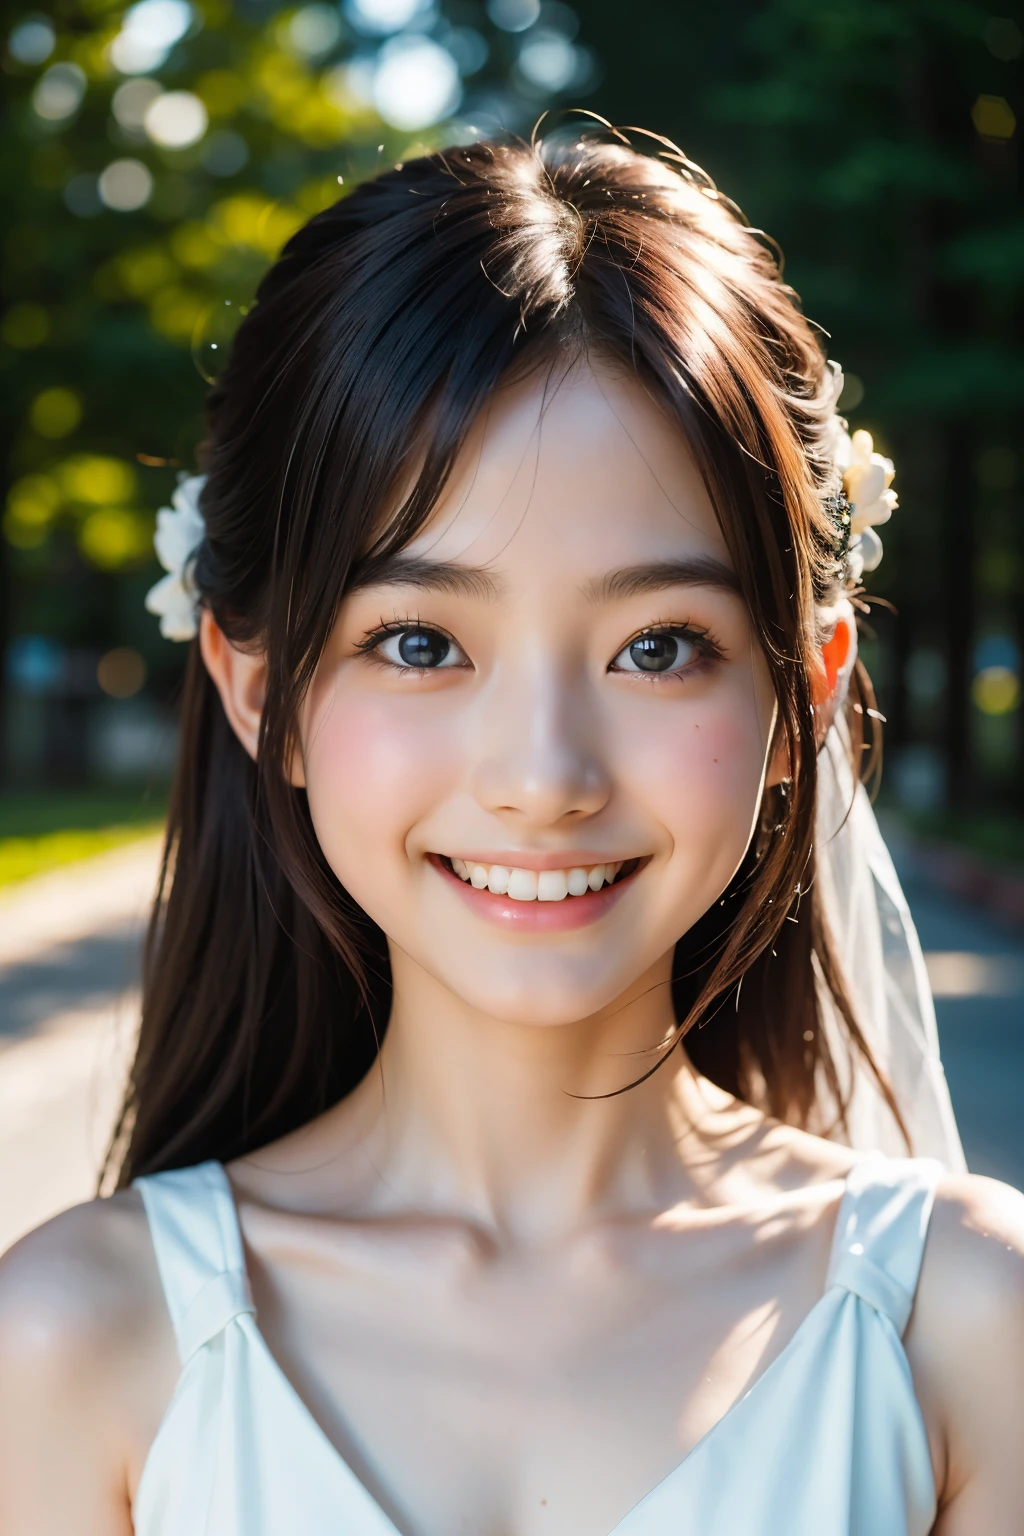 렌즈: 135mm f1.8, (최상의 품질),(RAW 사진), (탁상:1.1), (아름다운 19세 일본 소녀), 귀여운 얼굴, (깊게 파인 얼굴:0.7), (주근깨:0.4), dappled 햇빛, 극적인 조명, 웨딩 드레스, (캠퍼스에서), 수줍은, (클로즈업 샷:1.2), (웃다),, (반짝이는 눈)、(햇빛)